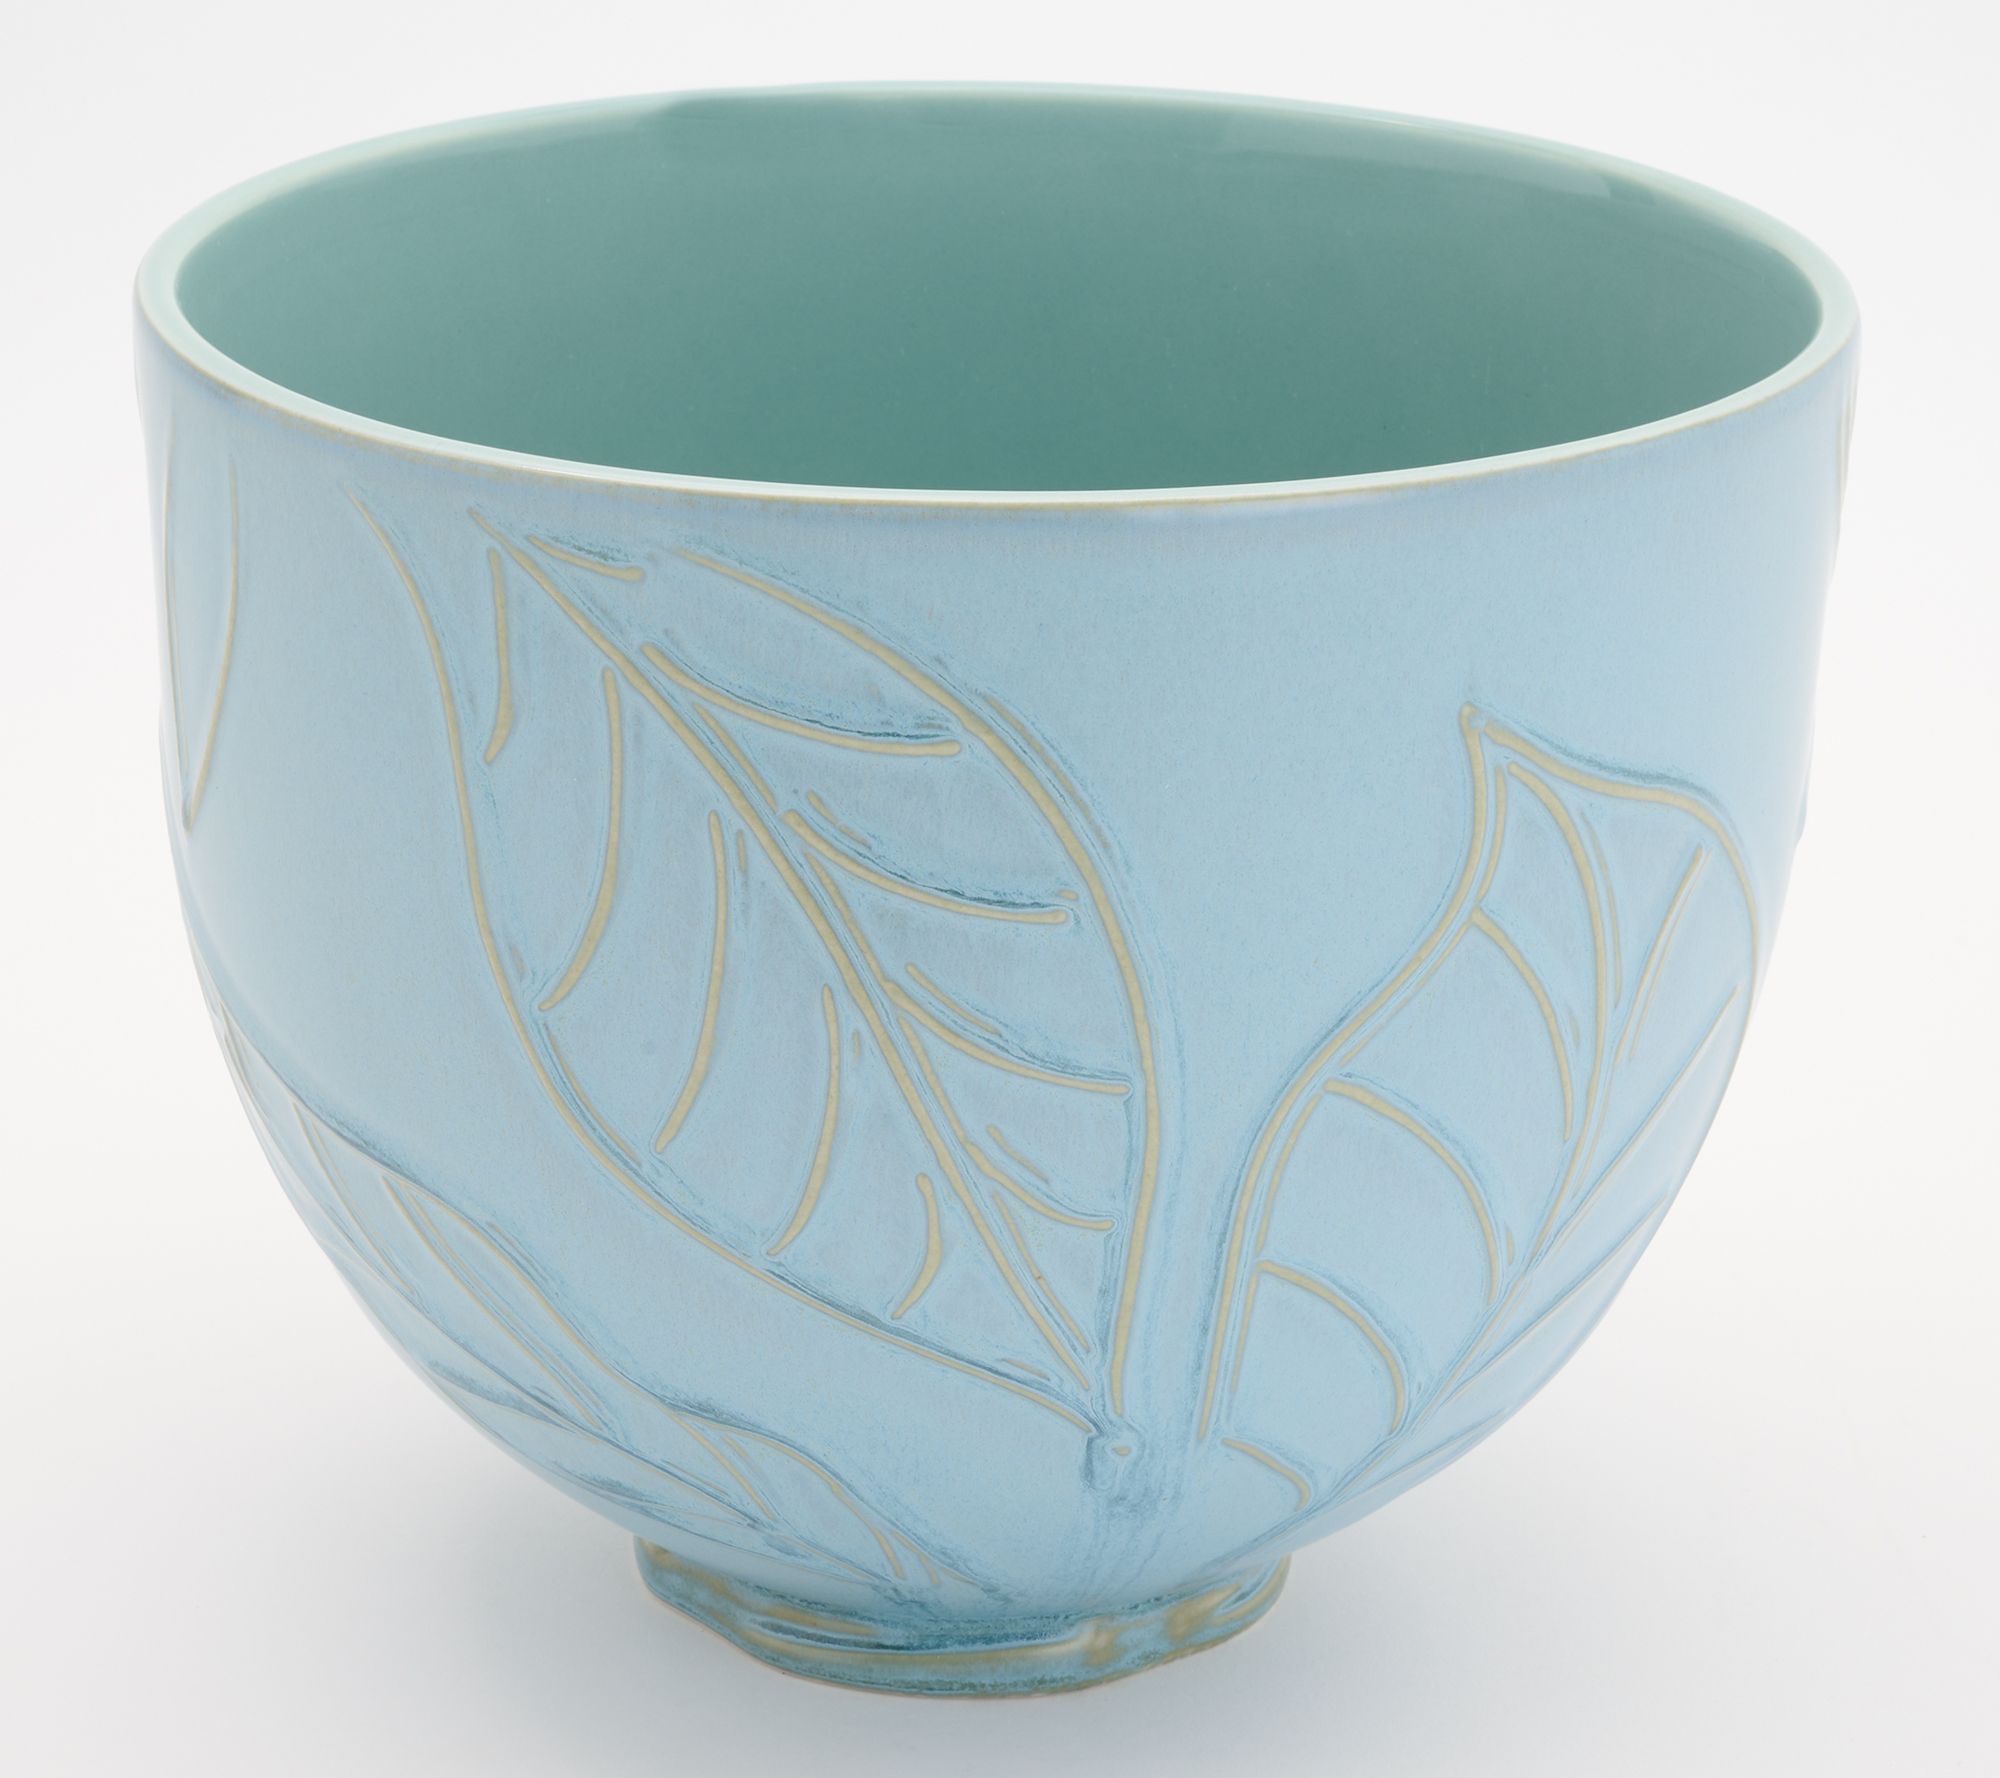 5 Quart Textured Ceramic Bowl